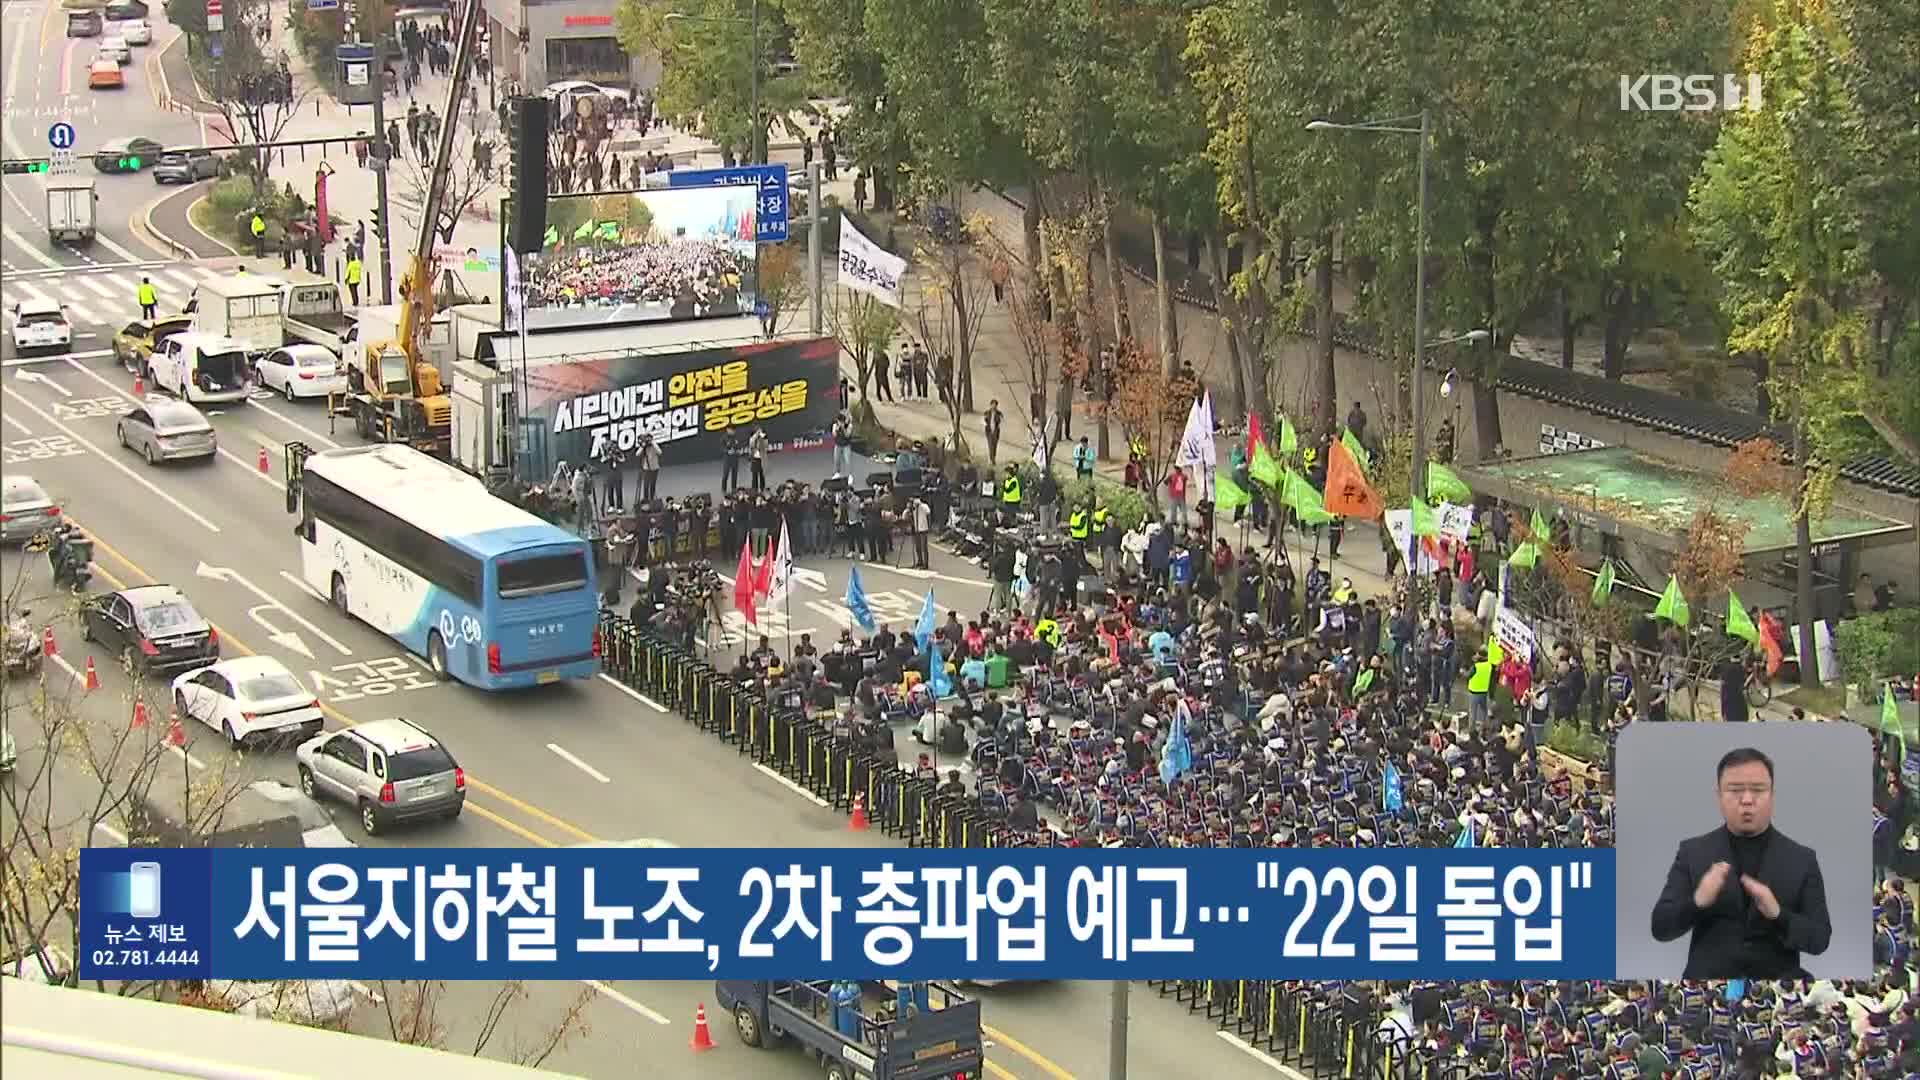 서울지하철 노조, 2차 총파업 예고…“22일 돌입”